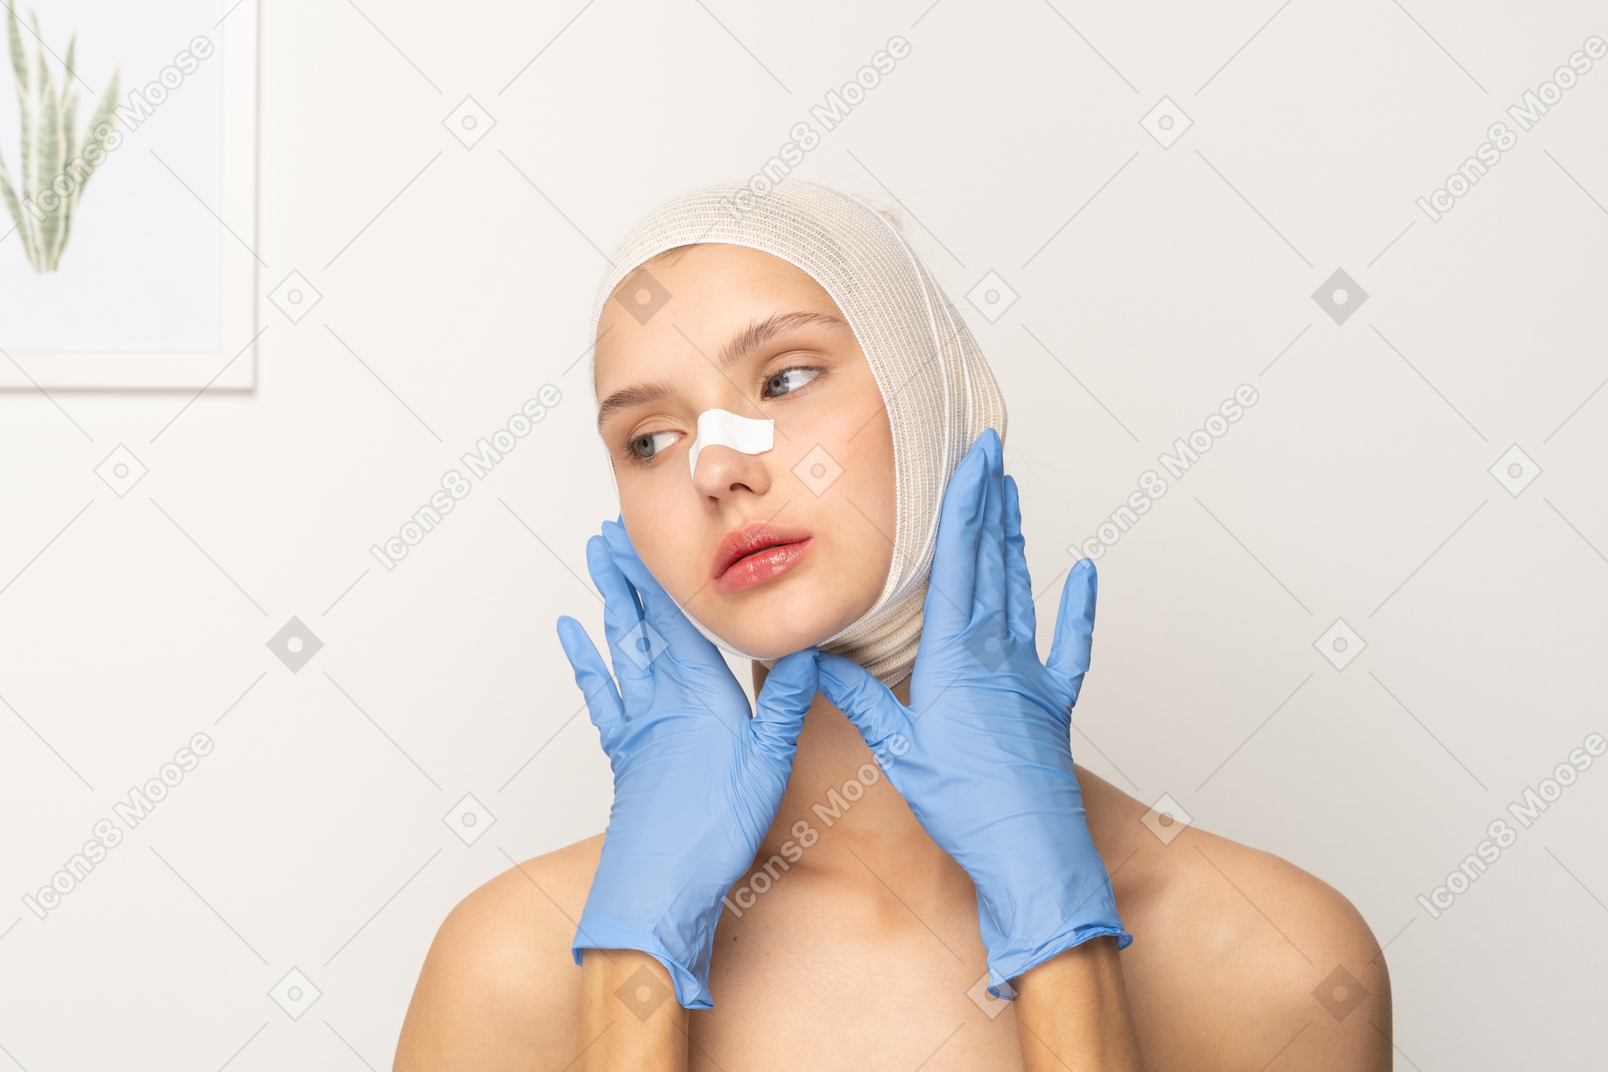 Paciente do sexo feminino com mãos enluvadas emoldurando seu rosto